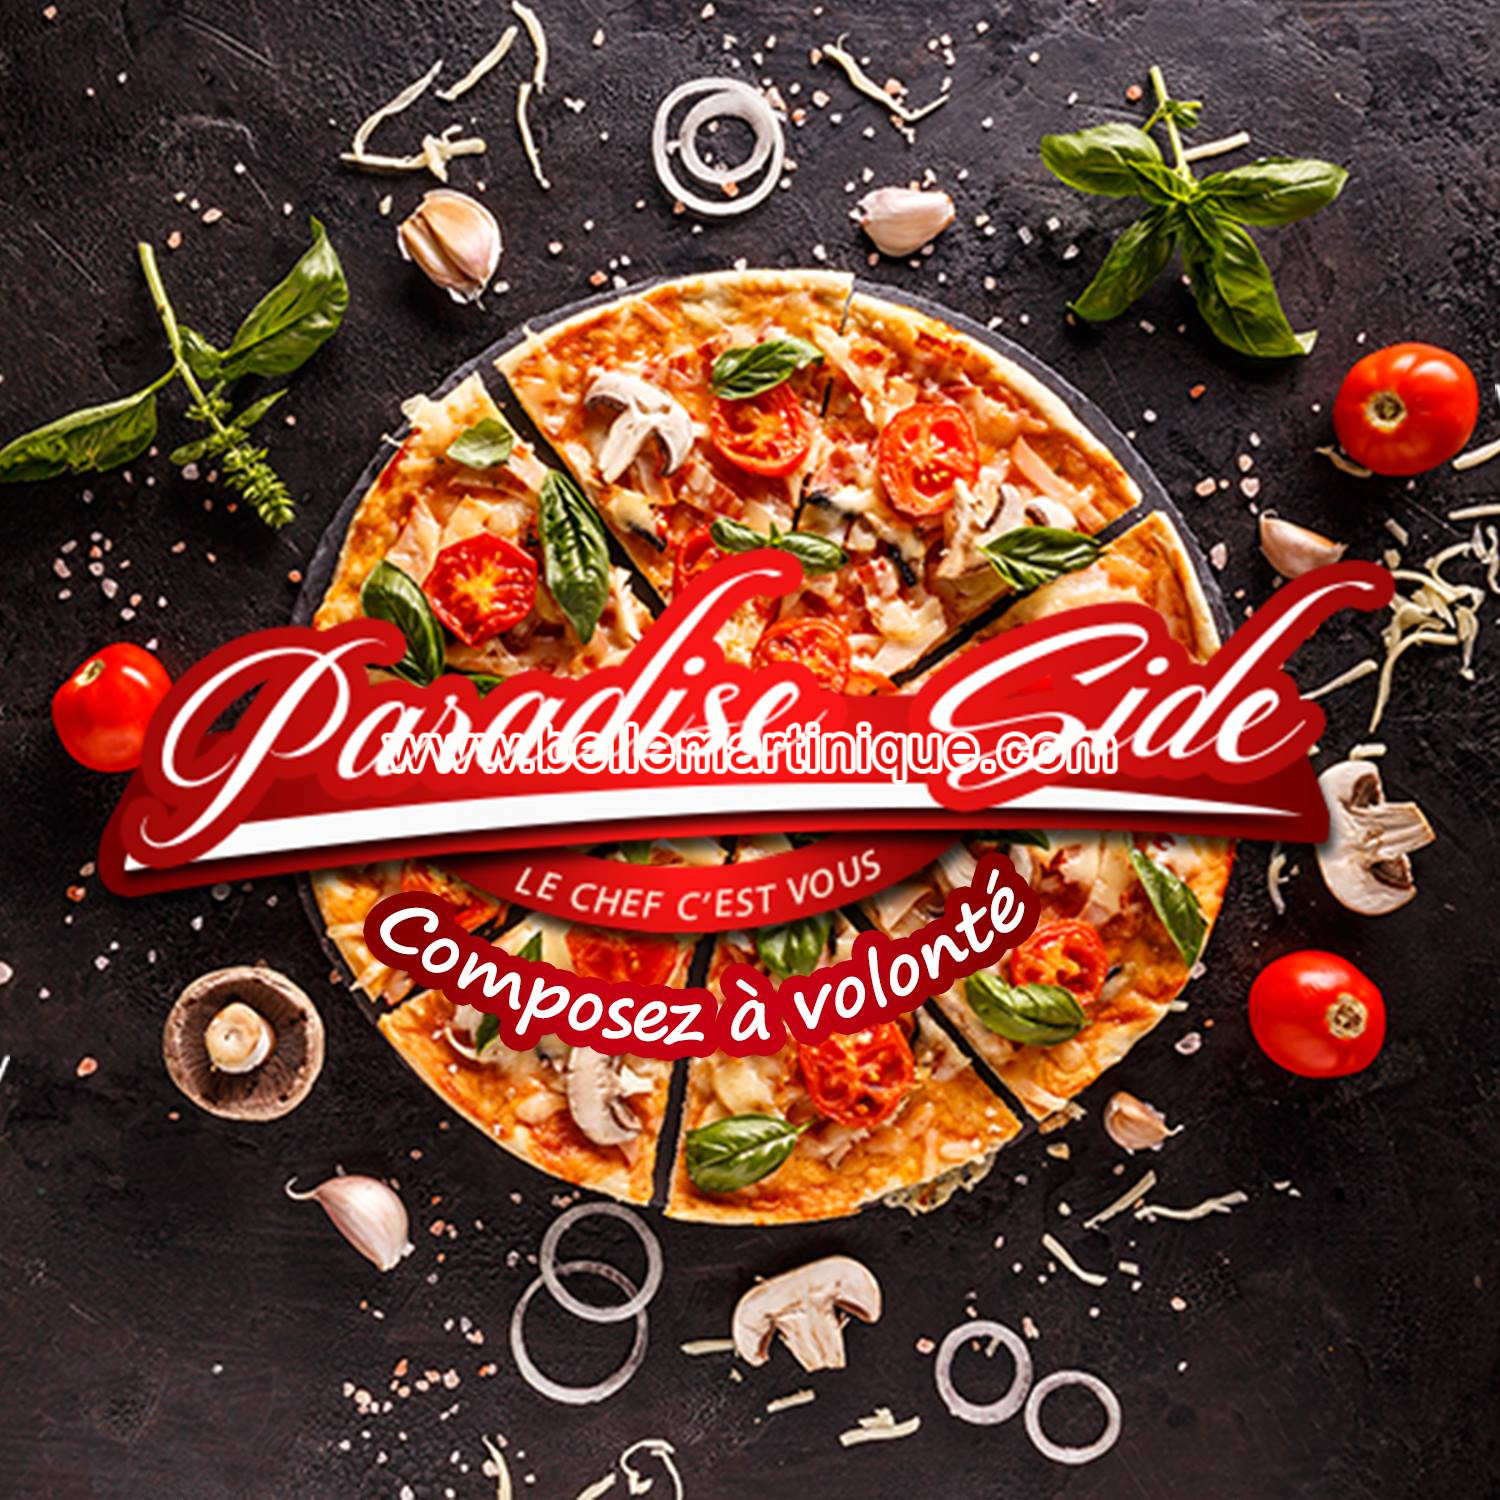 Paradise side - Restaurant - Pizzeria - Italien - Fort de France - Martinique - Antilles - Caraibe